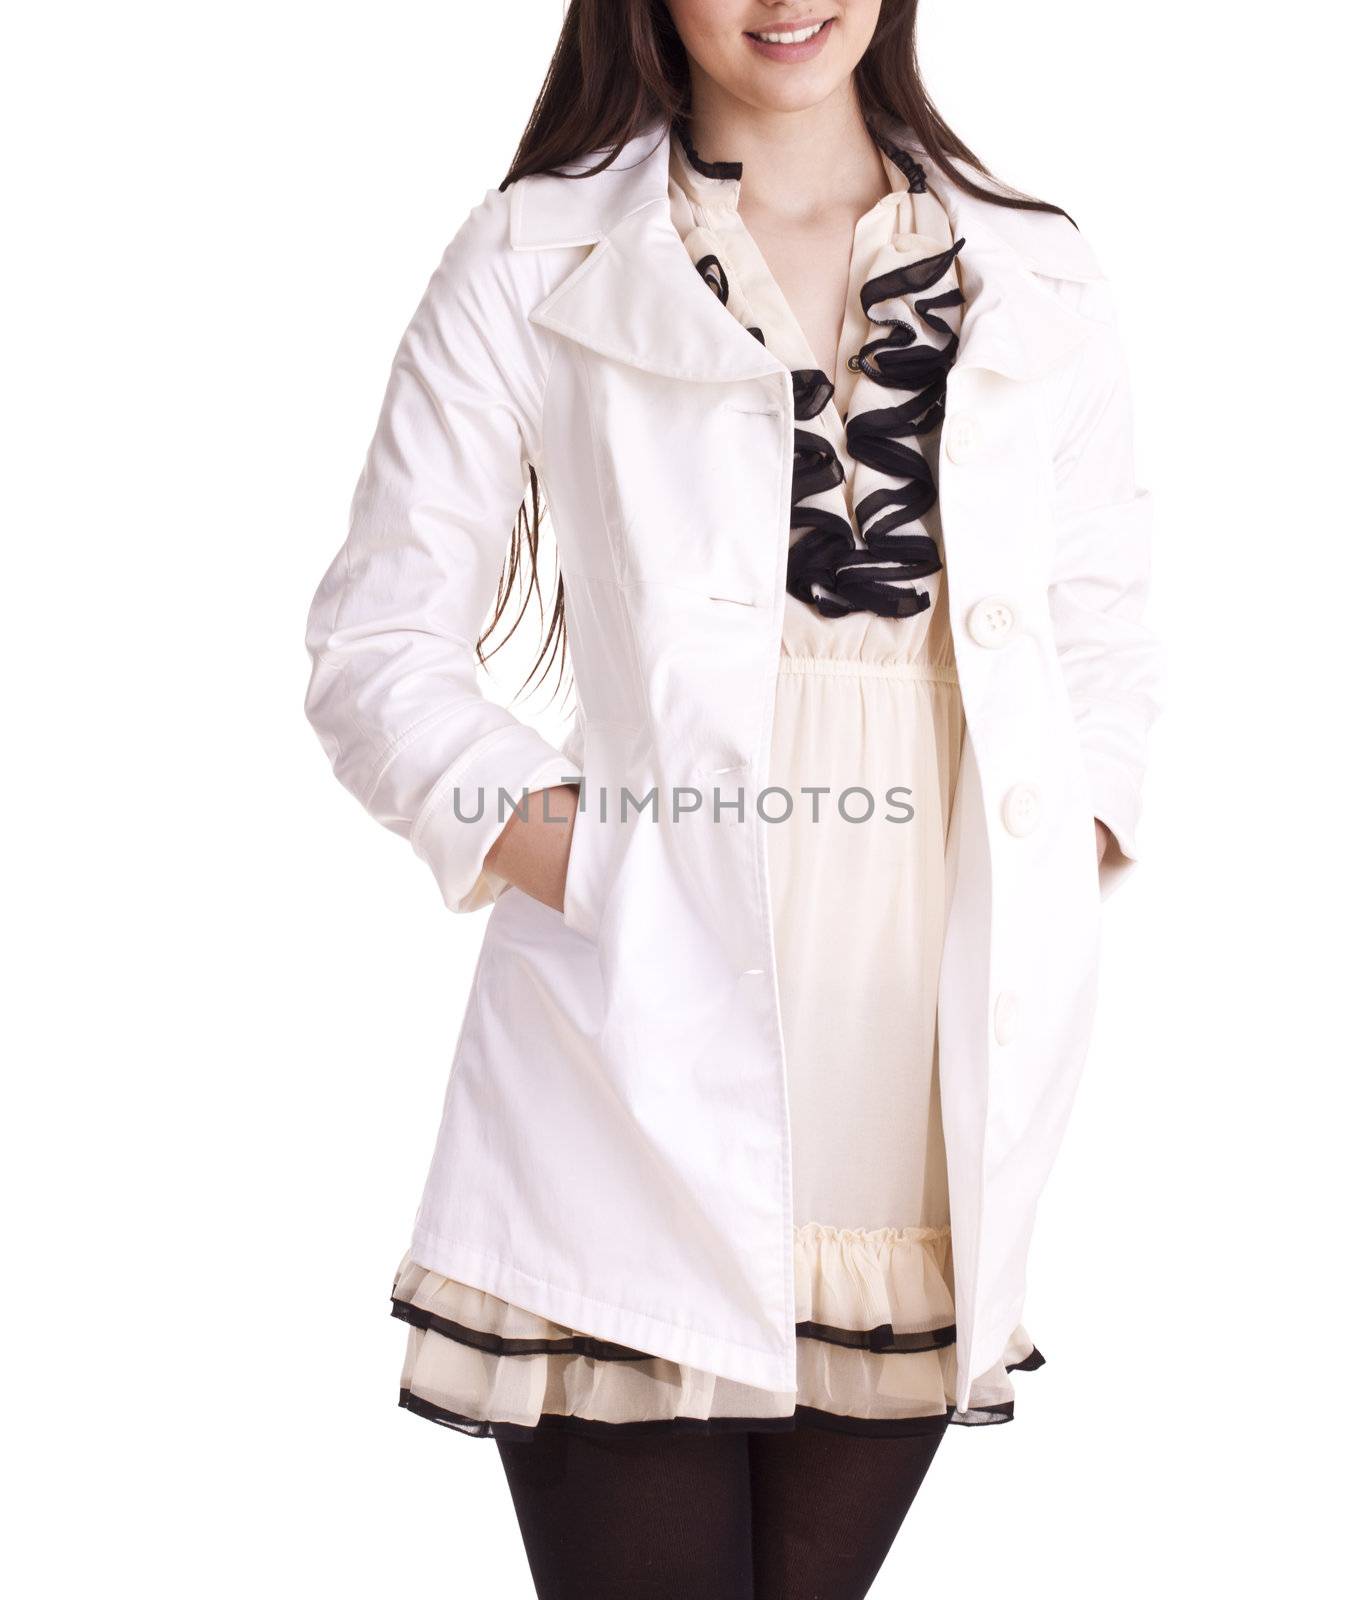 Beautiful fashion model posing in white coat by ozaiachin